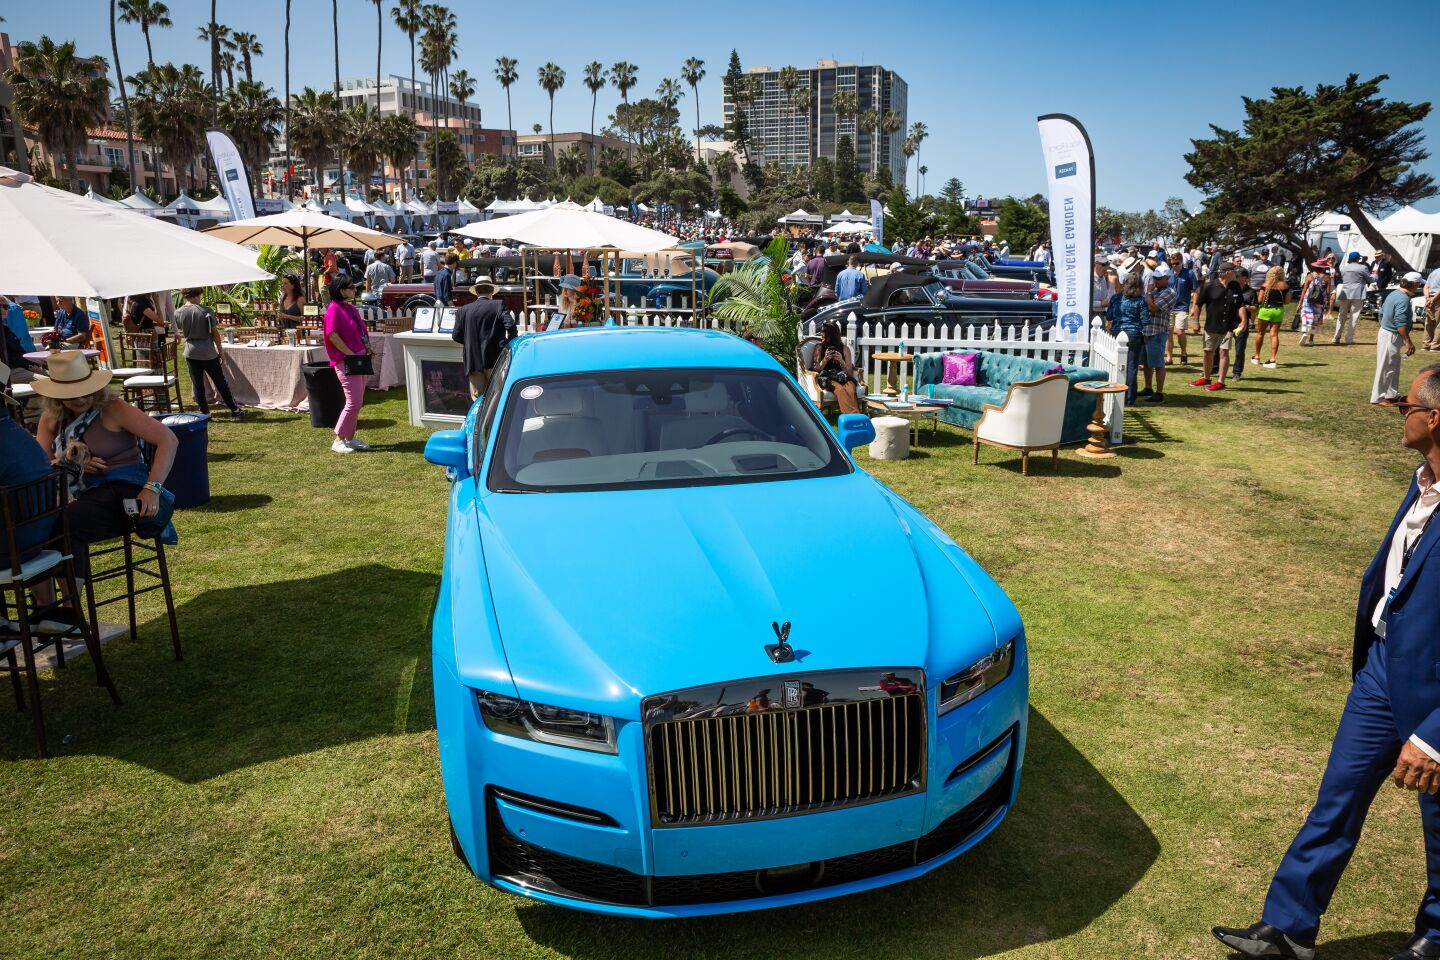 A baby blue Rolls-Royce gleams in the La Jolla sun.